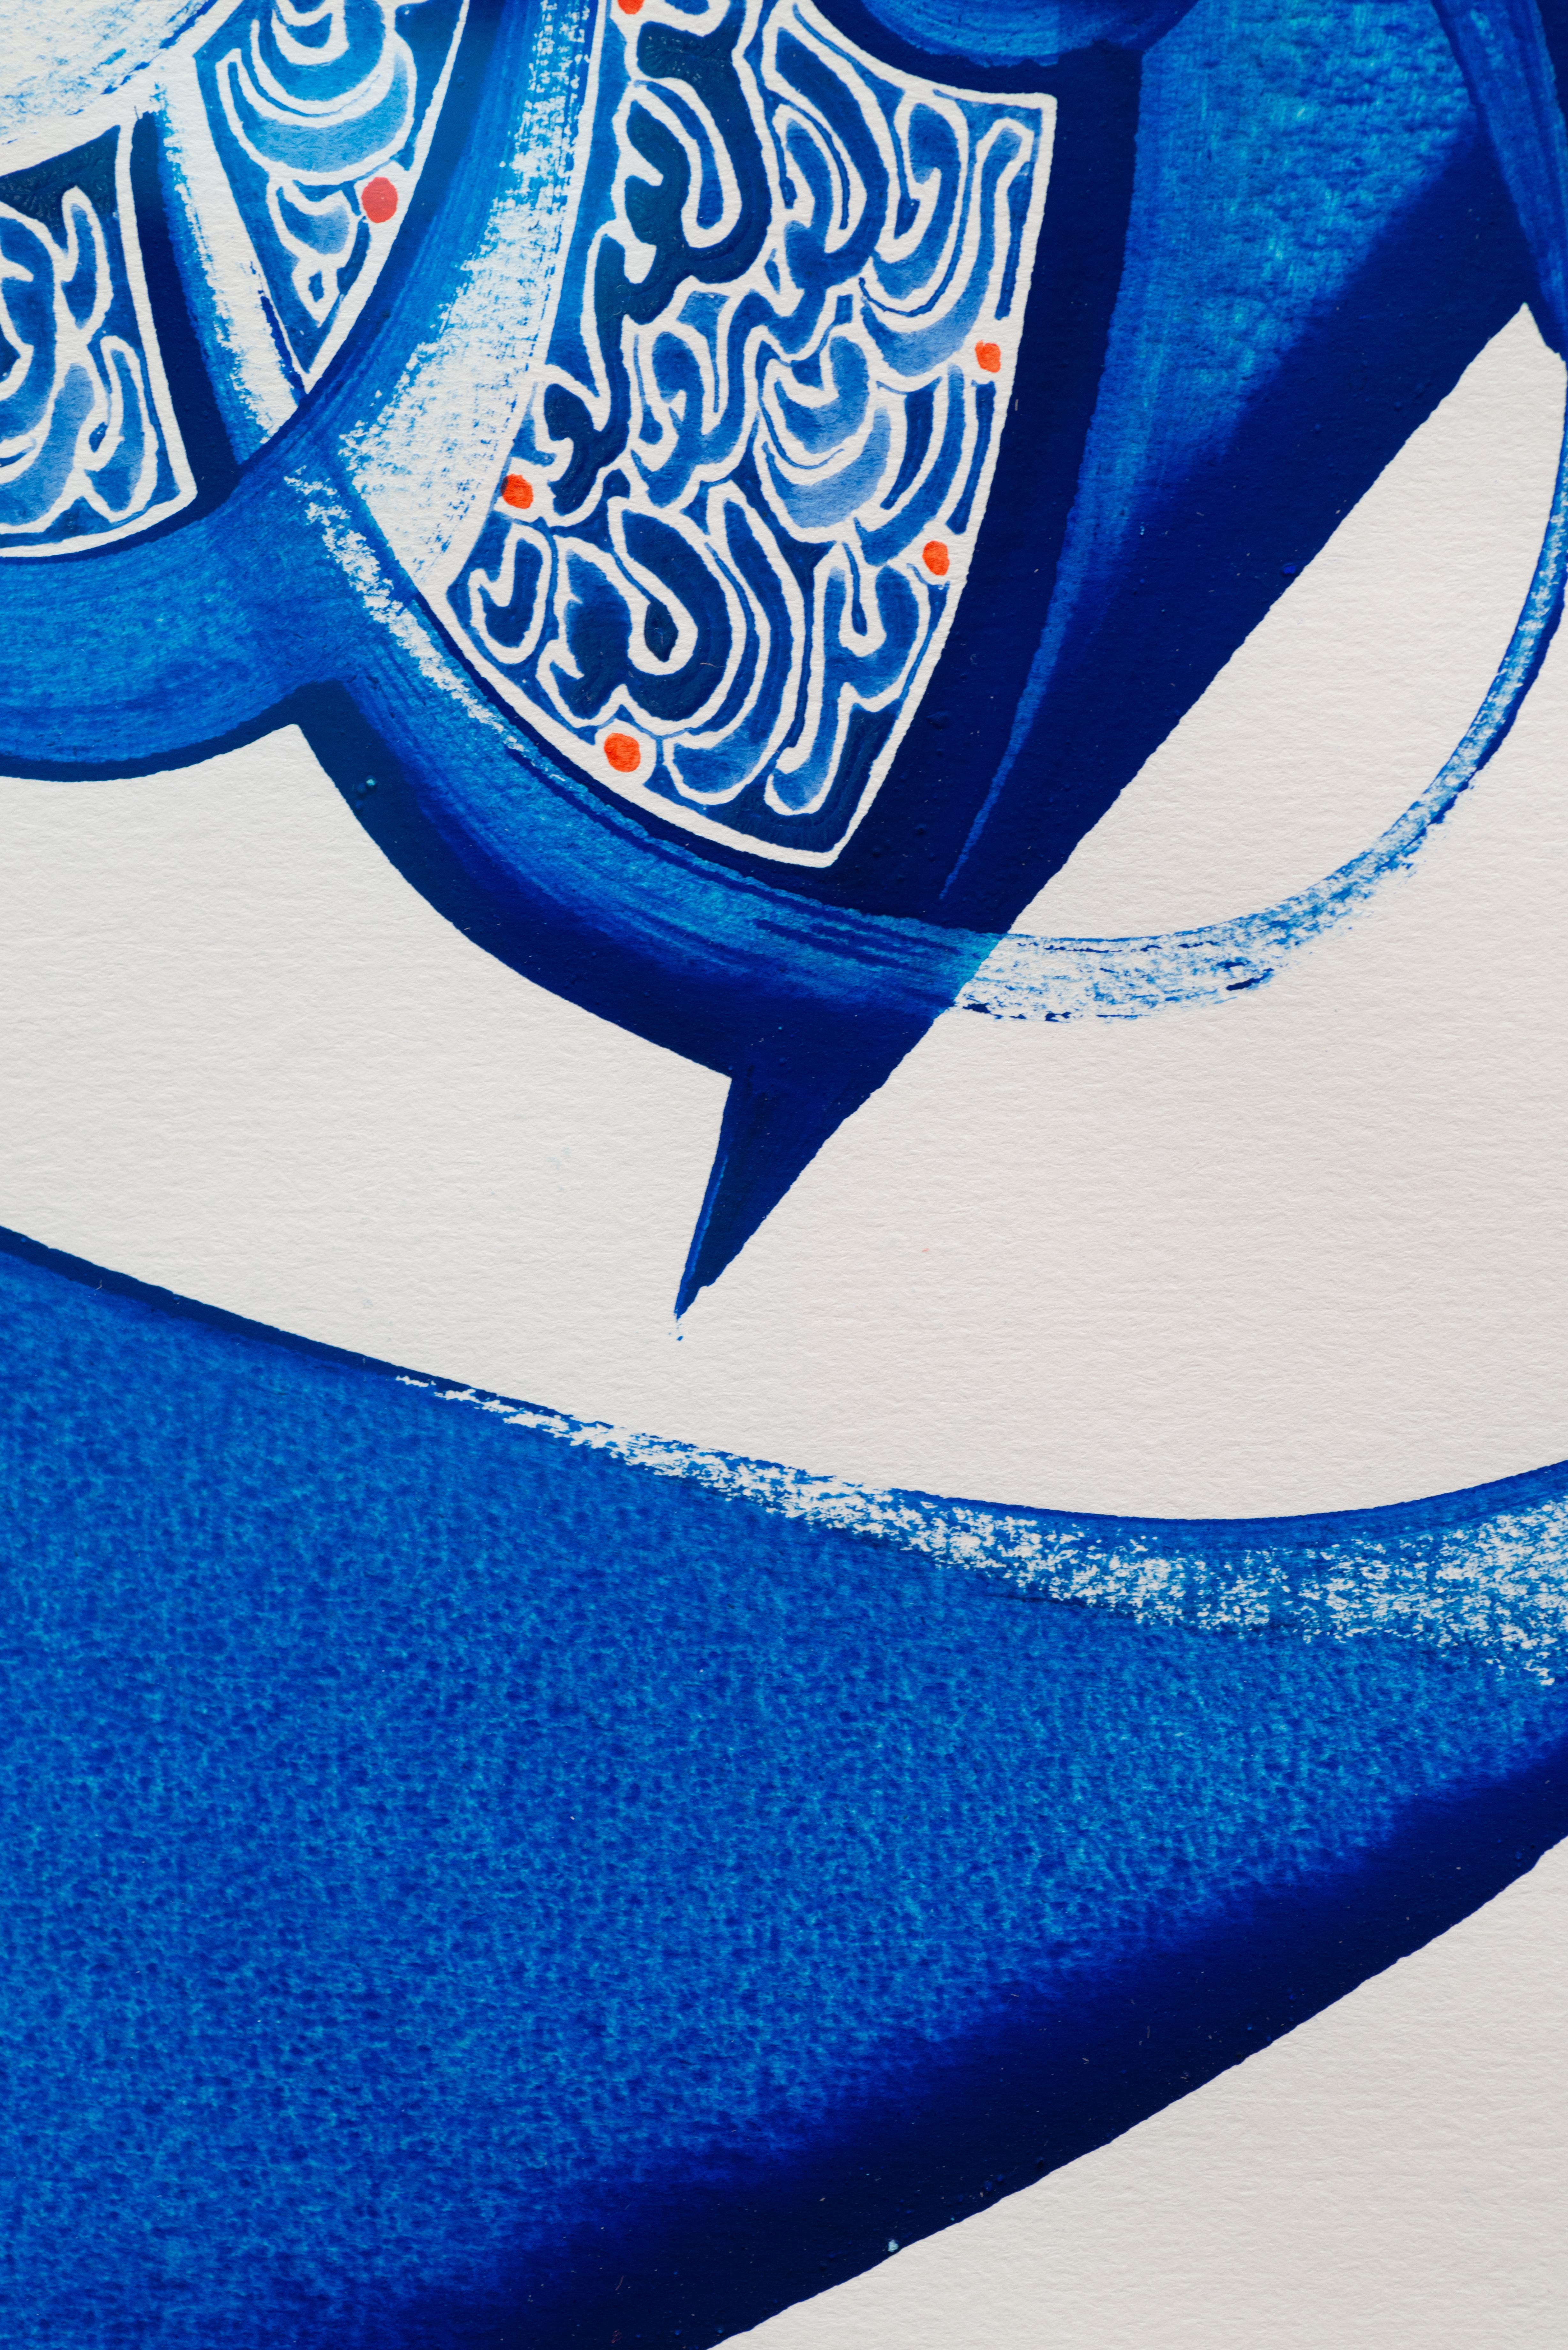 Leuchtend blaue zeitgenössische islamische Kalligrafie auf Papier (Abstrakter Expressionismus), Art, von Hassan Massoudy